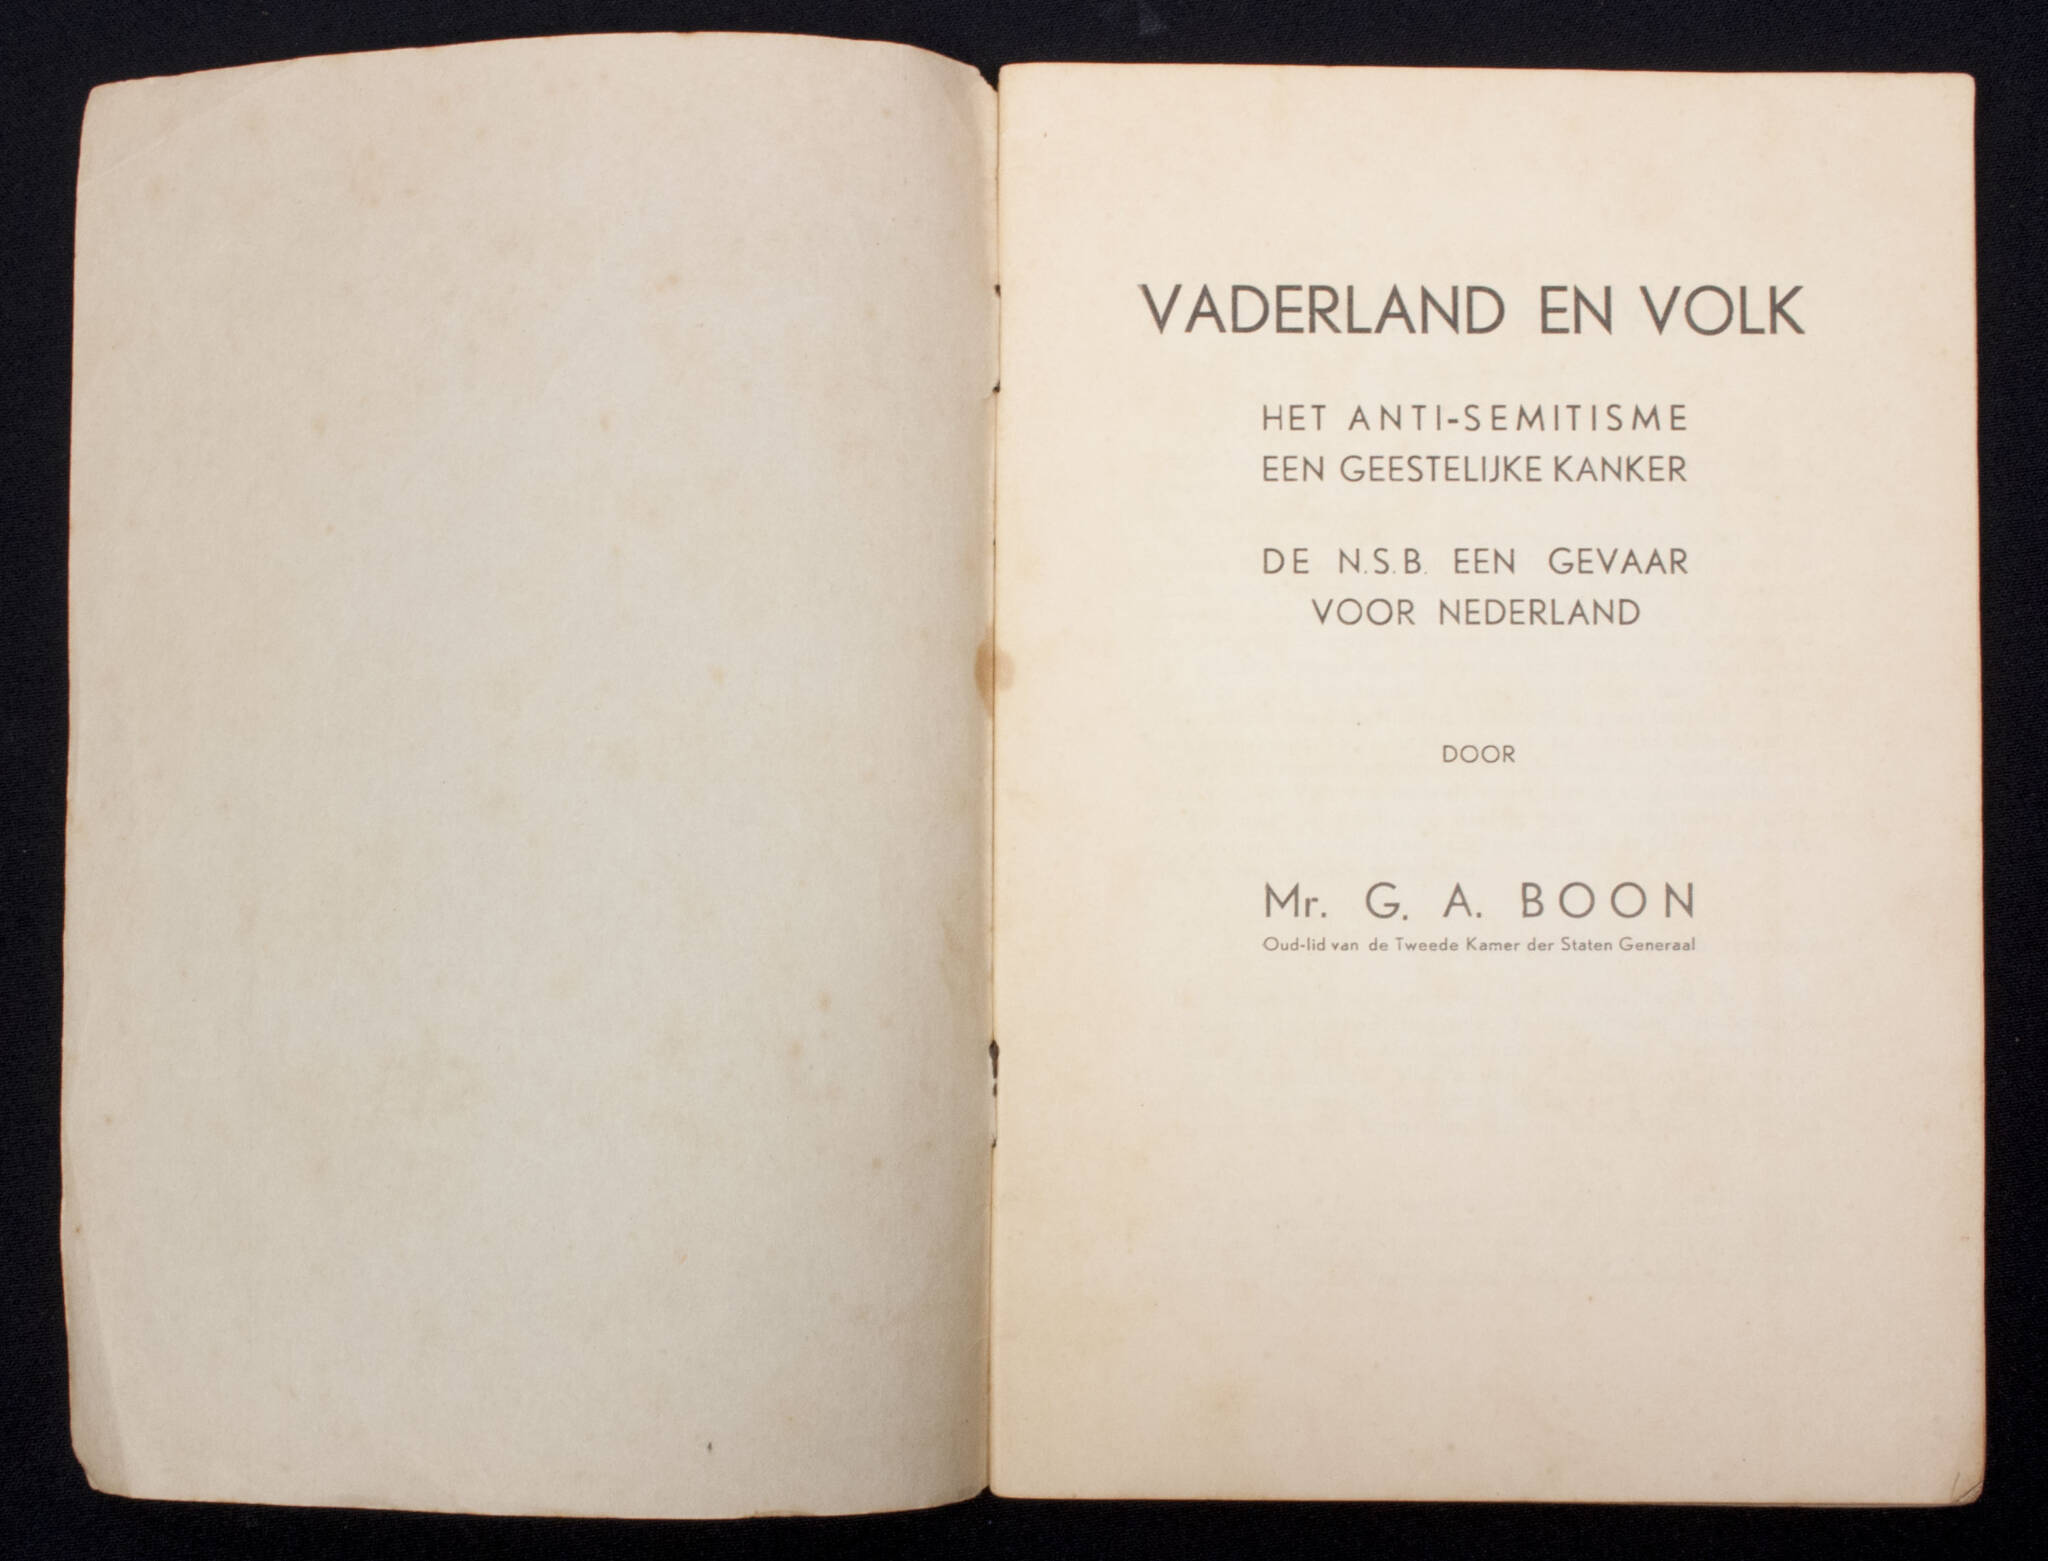 (Brochure) Vaderland en Volk. Het anti-semitisme een geestelijke kanker. De N.S.B. een gevaar voor Nederland (1939)